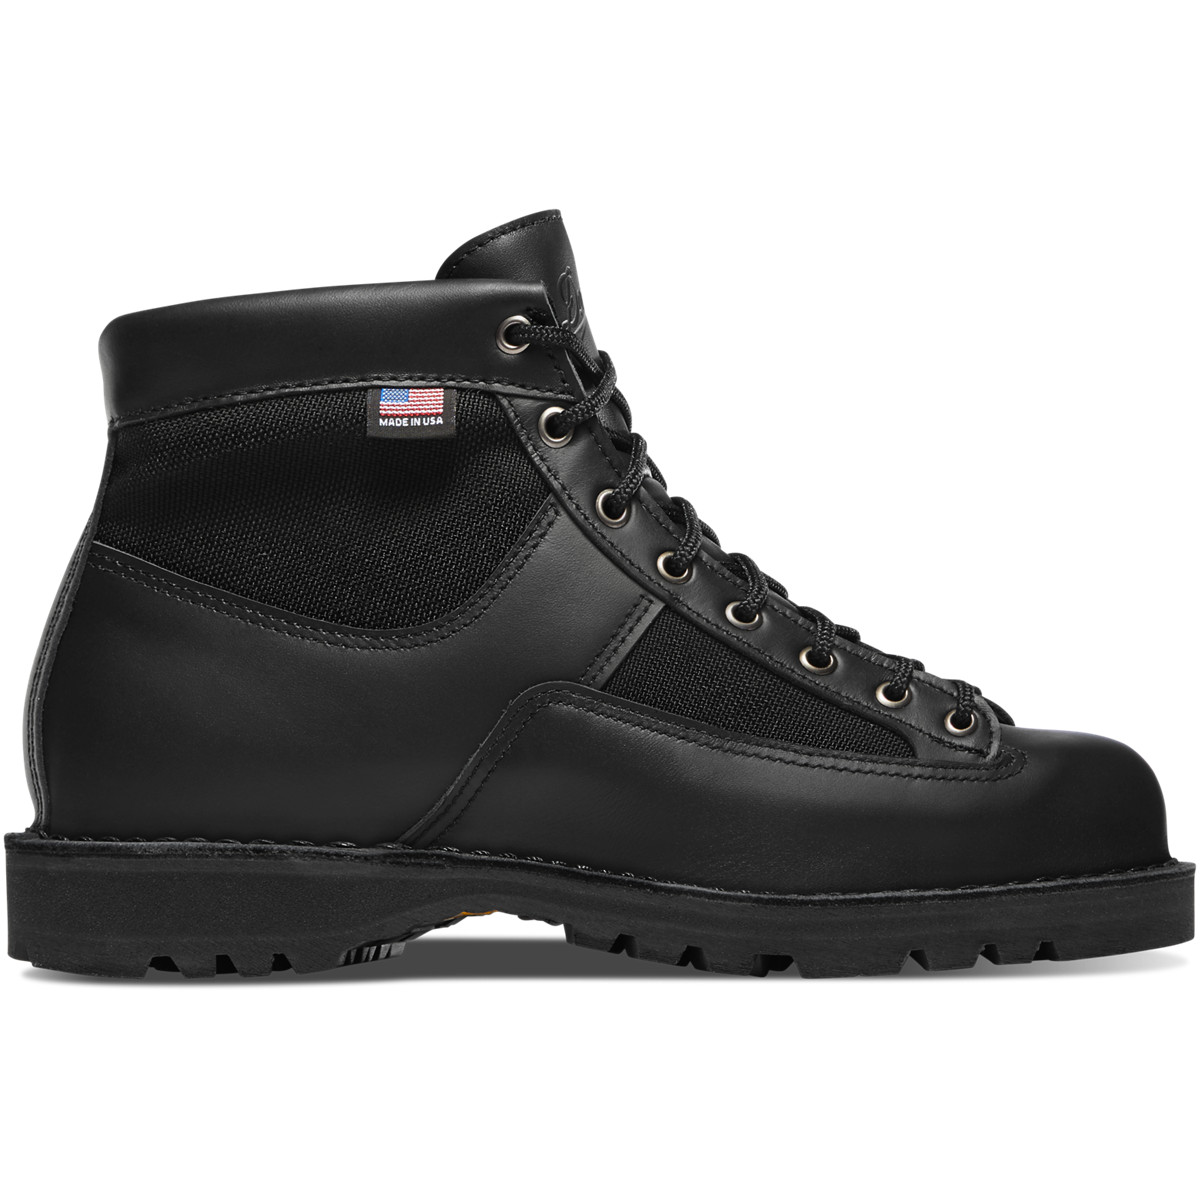 Sizes 7 to 13 Black Leather/Nylon Patrol Boot